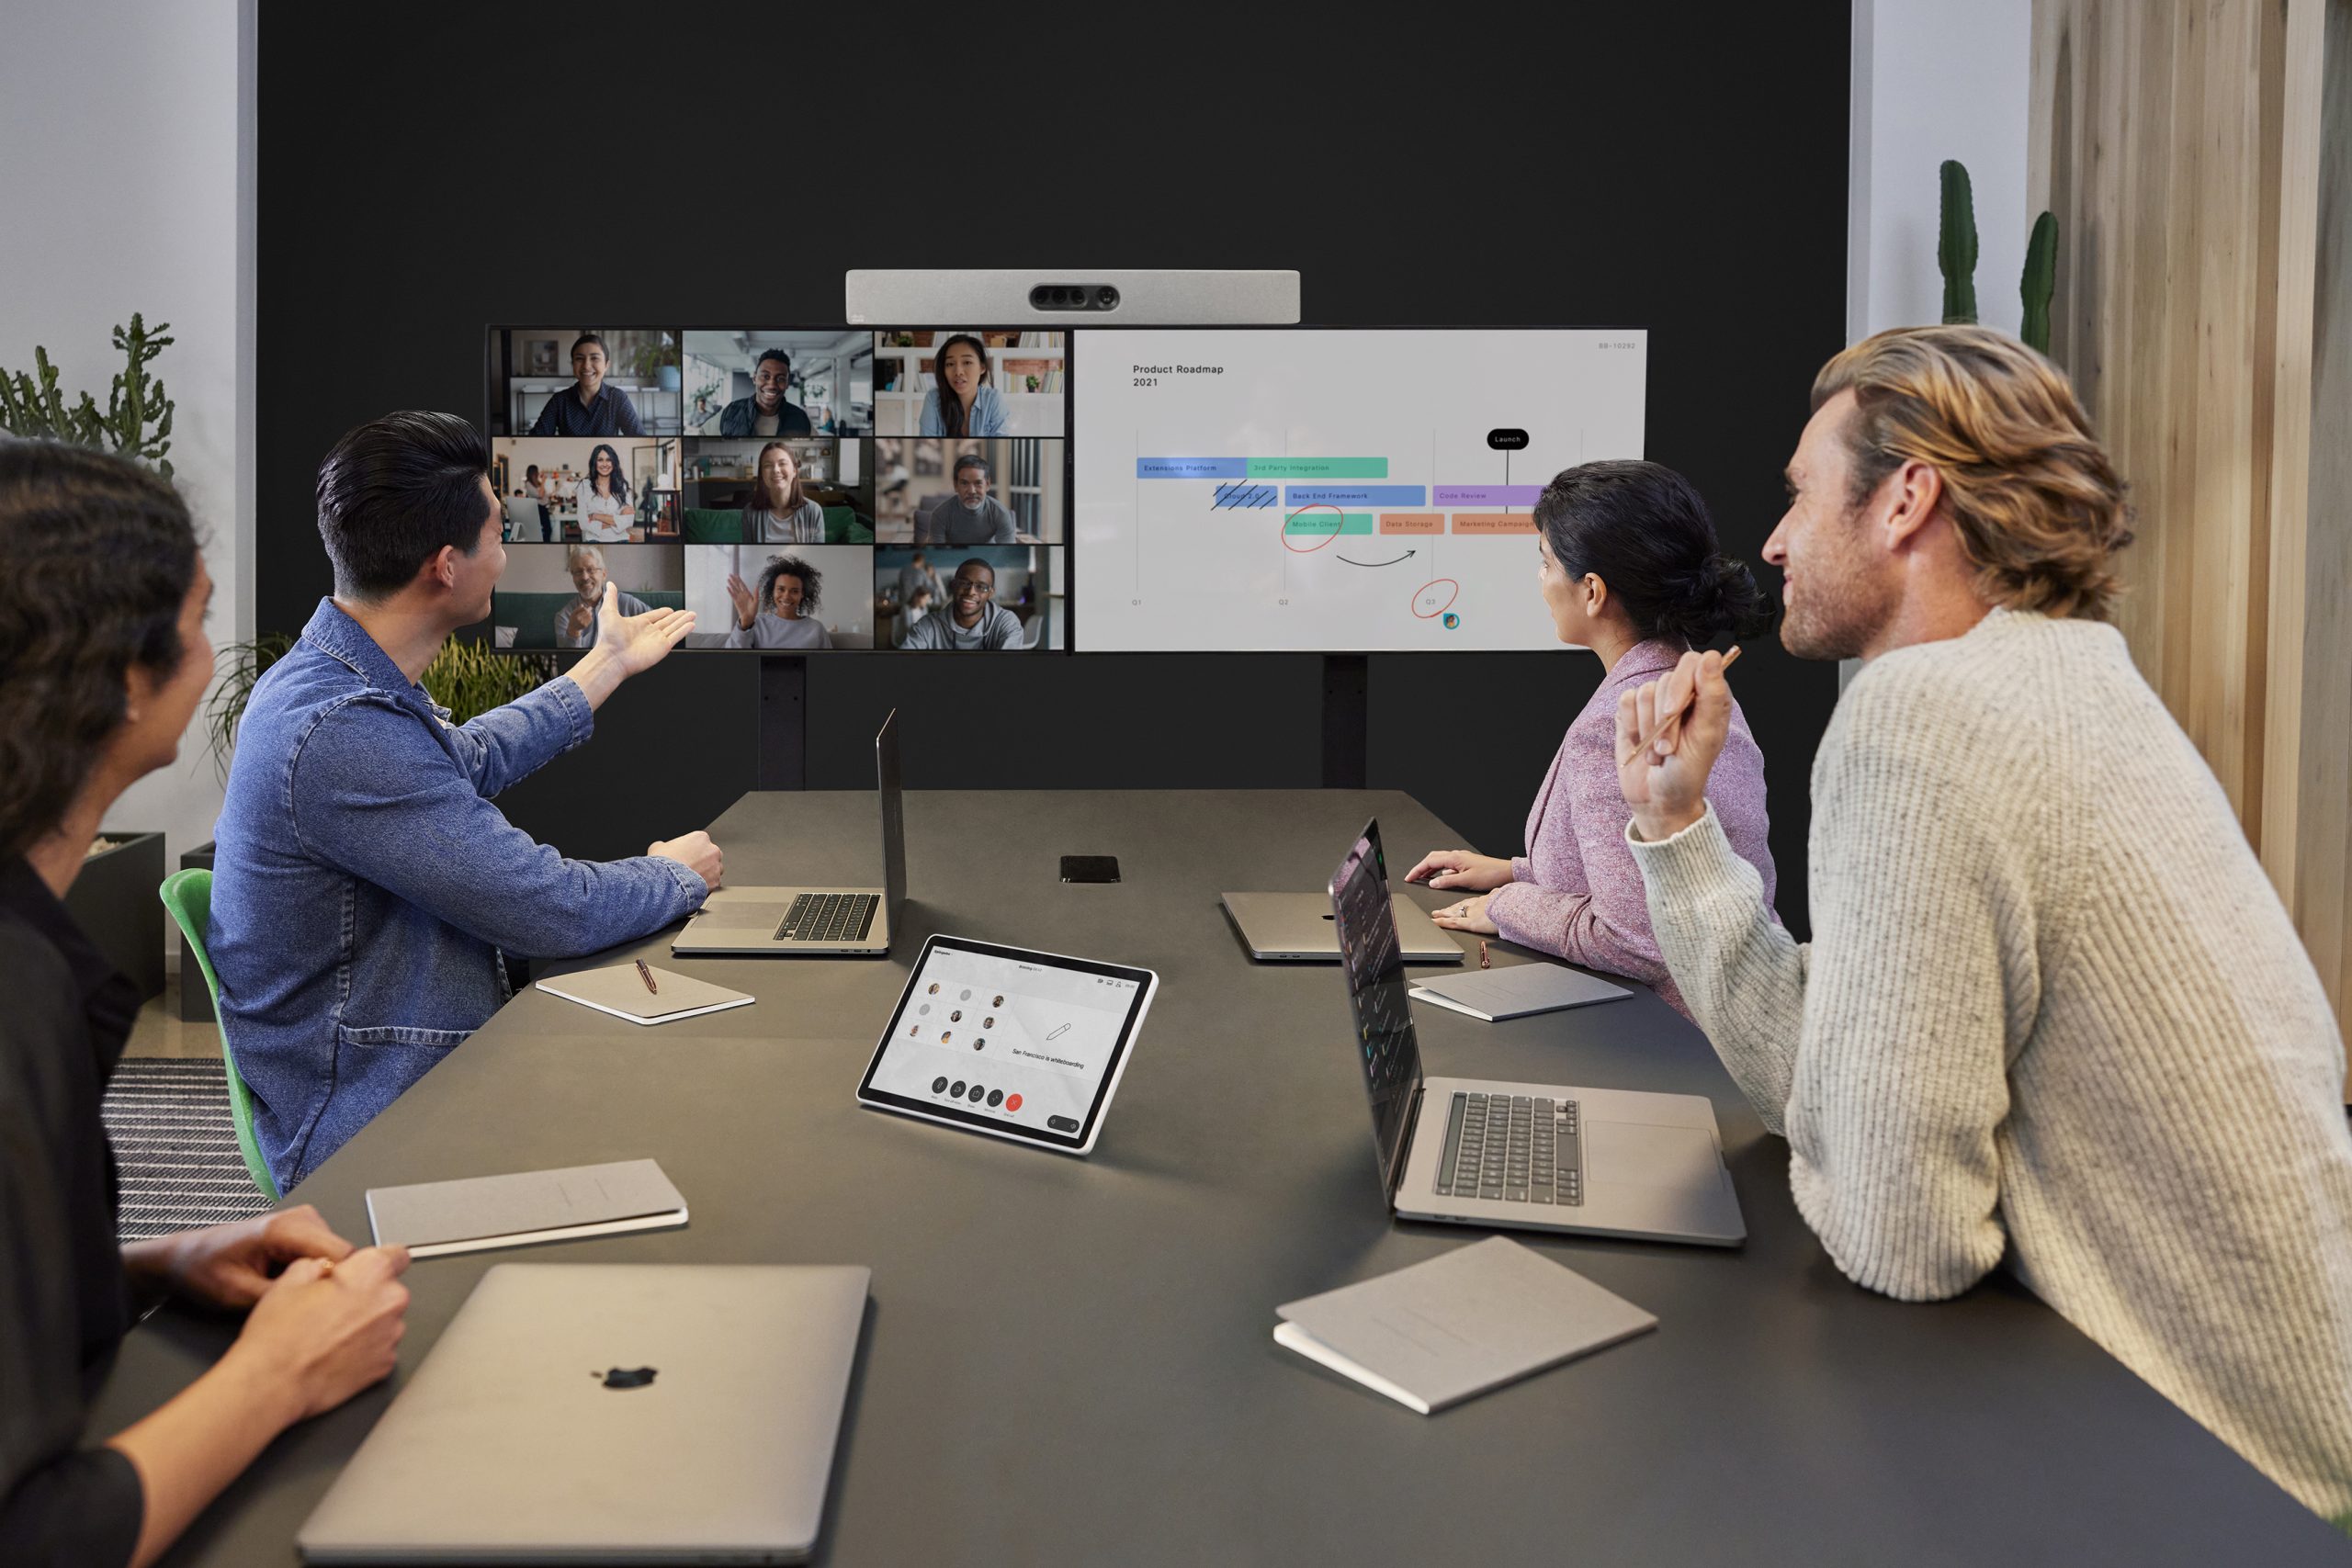 图片展示了几位专业人士正在办公室内通过视频会议与远程同事讨论工作计划。